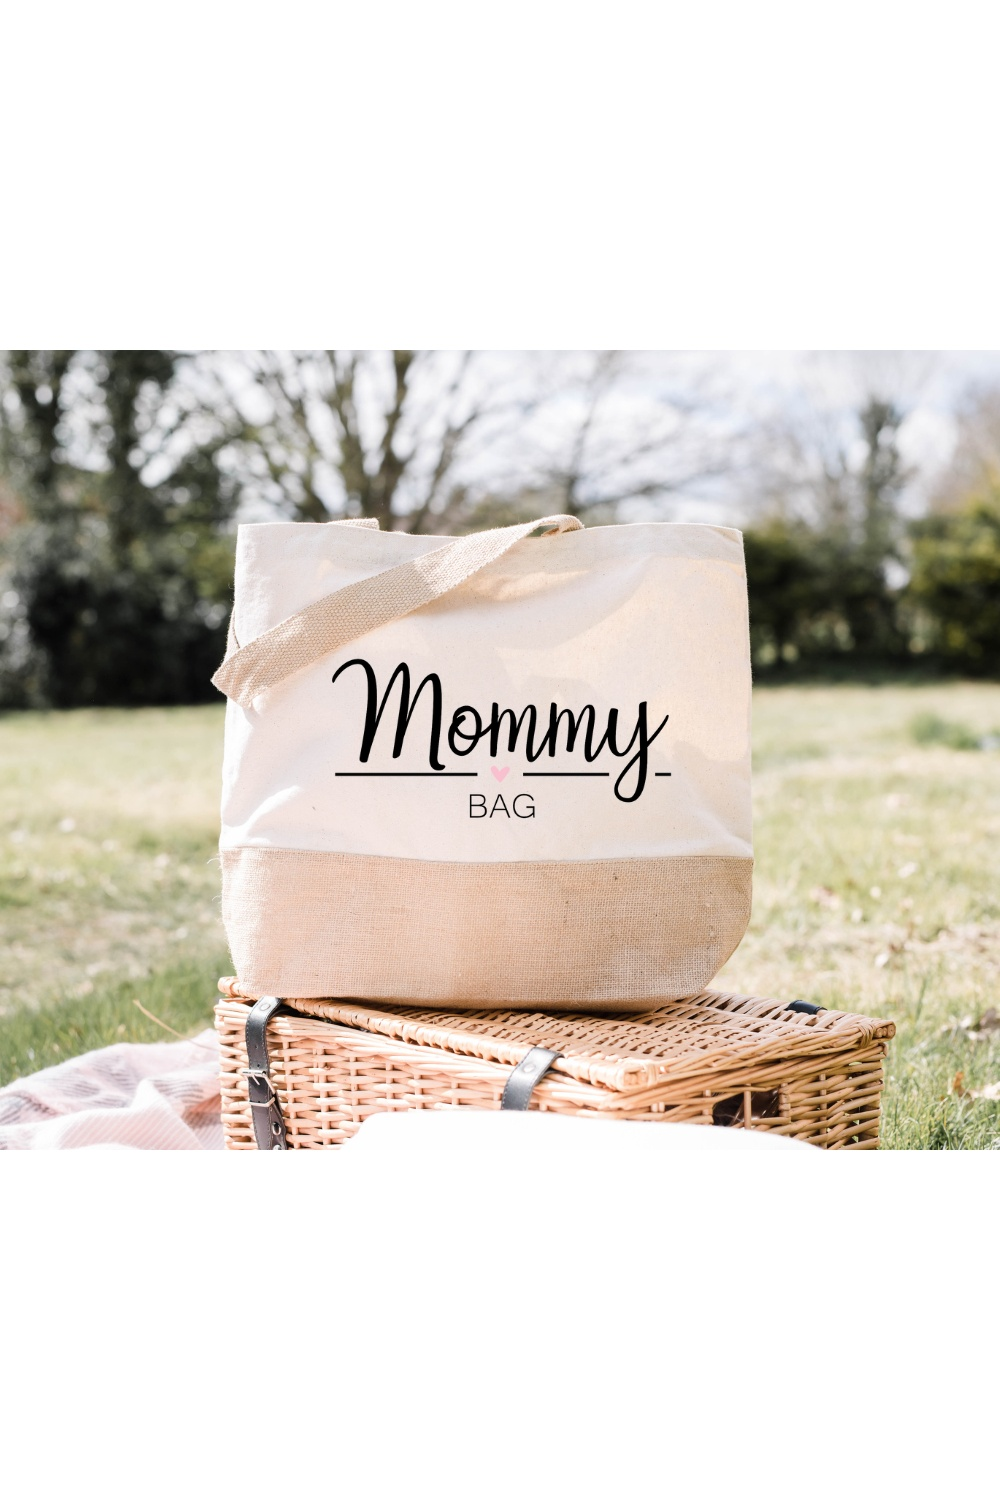 Personalisierte Jutetasche | Einkauftasche Mommy Bag | Jutetasche | Einkaufsshopper